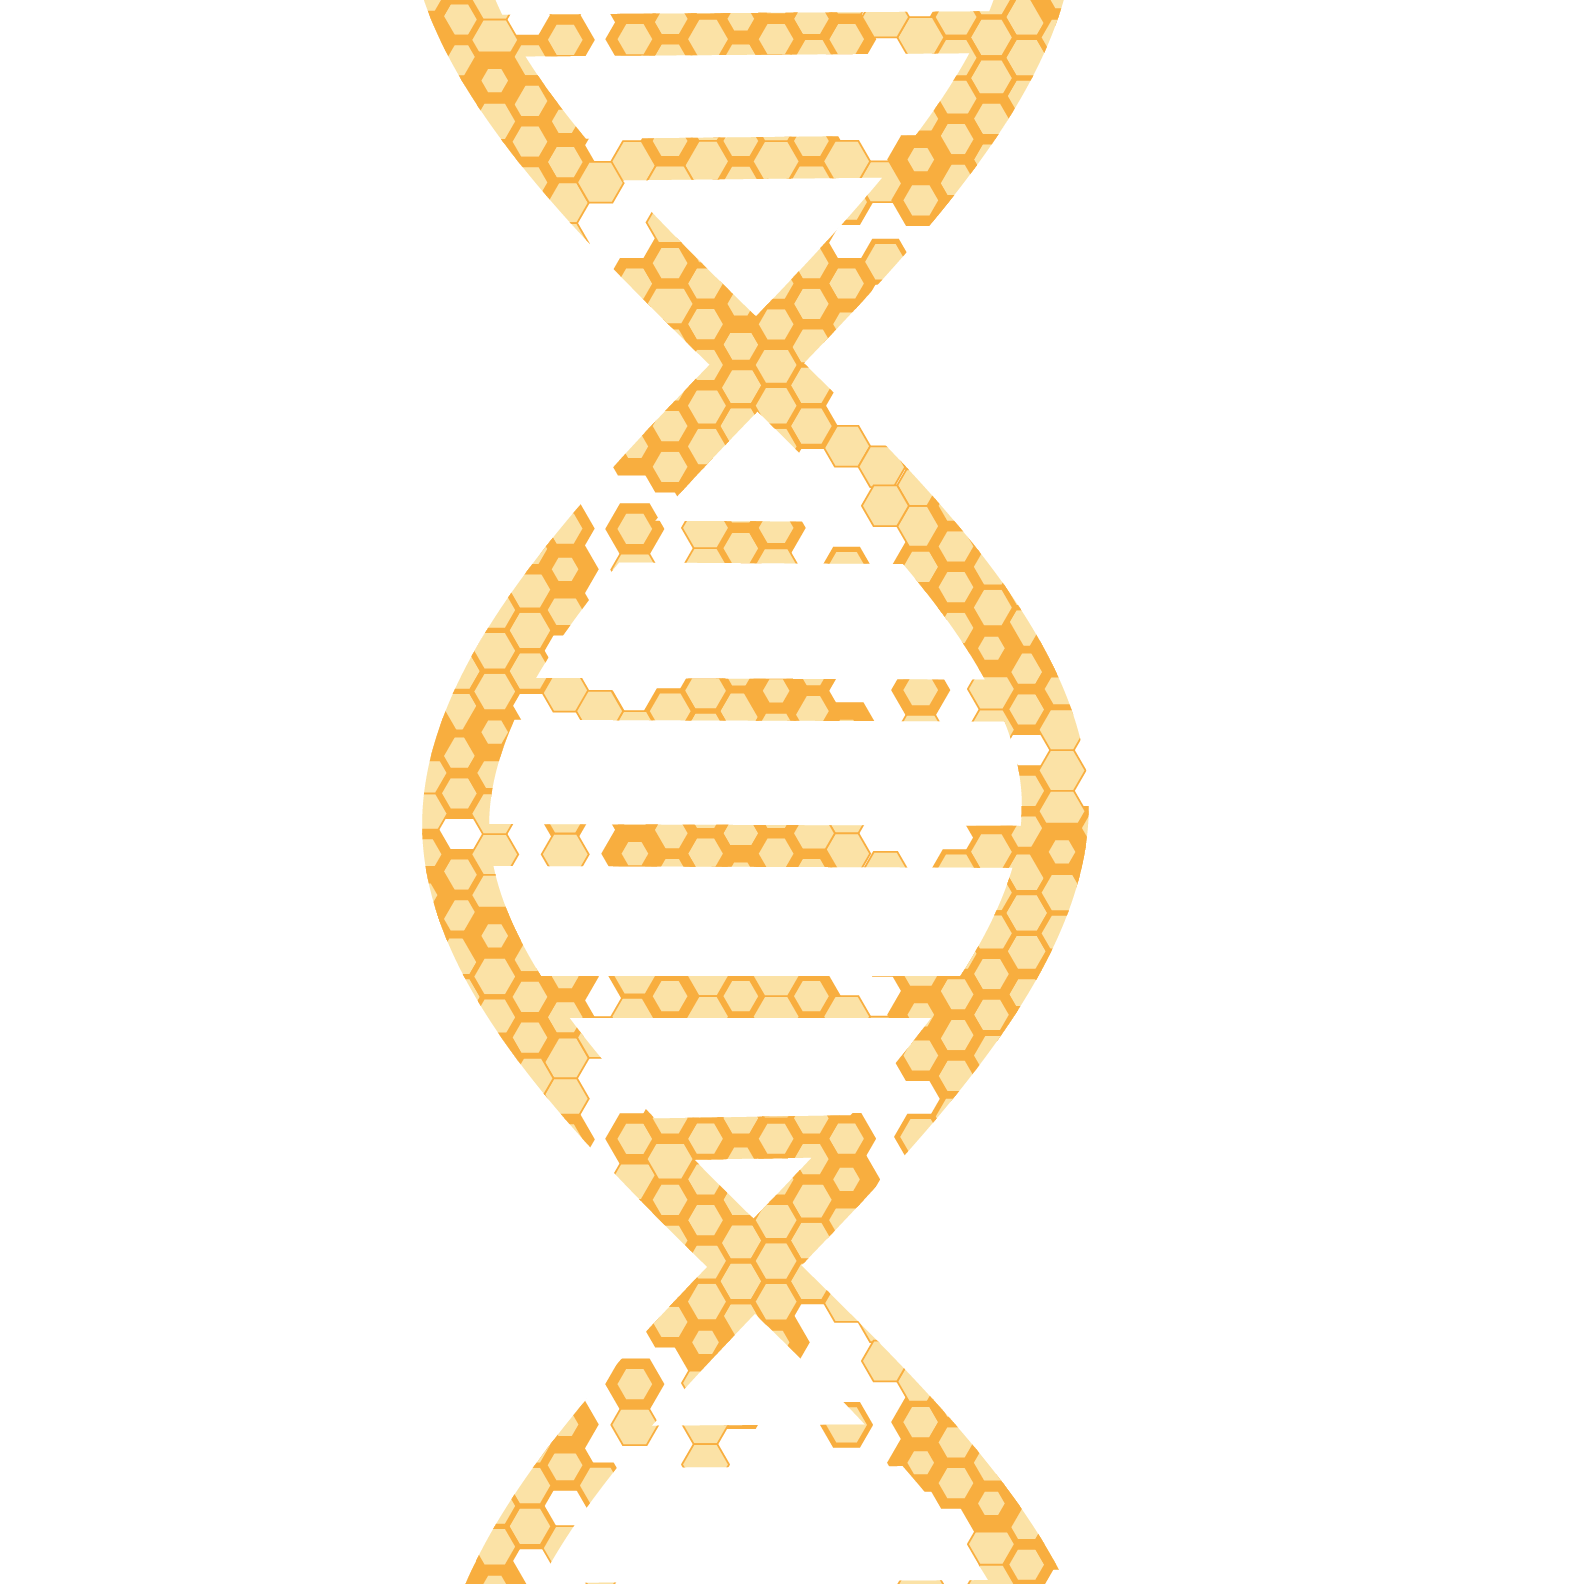 Honey comb in DNA double-helix